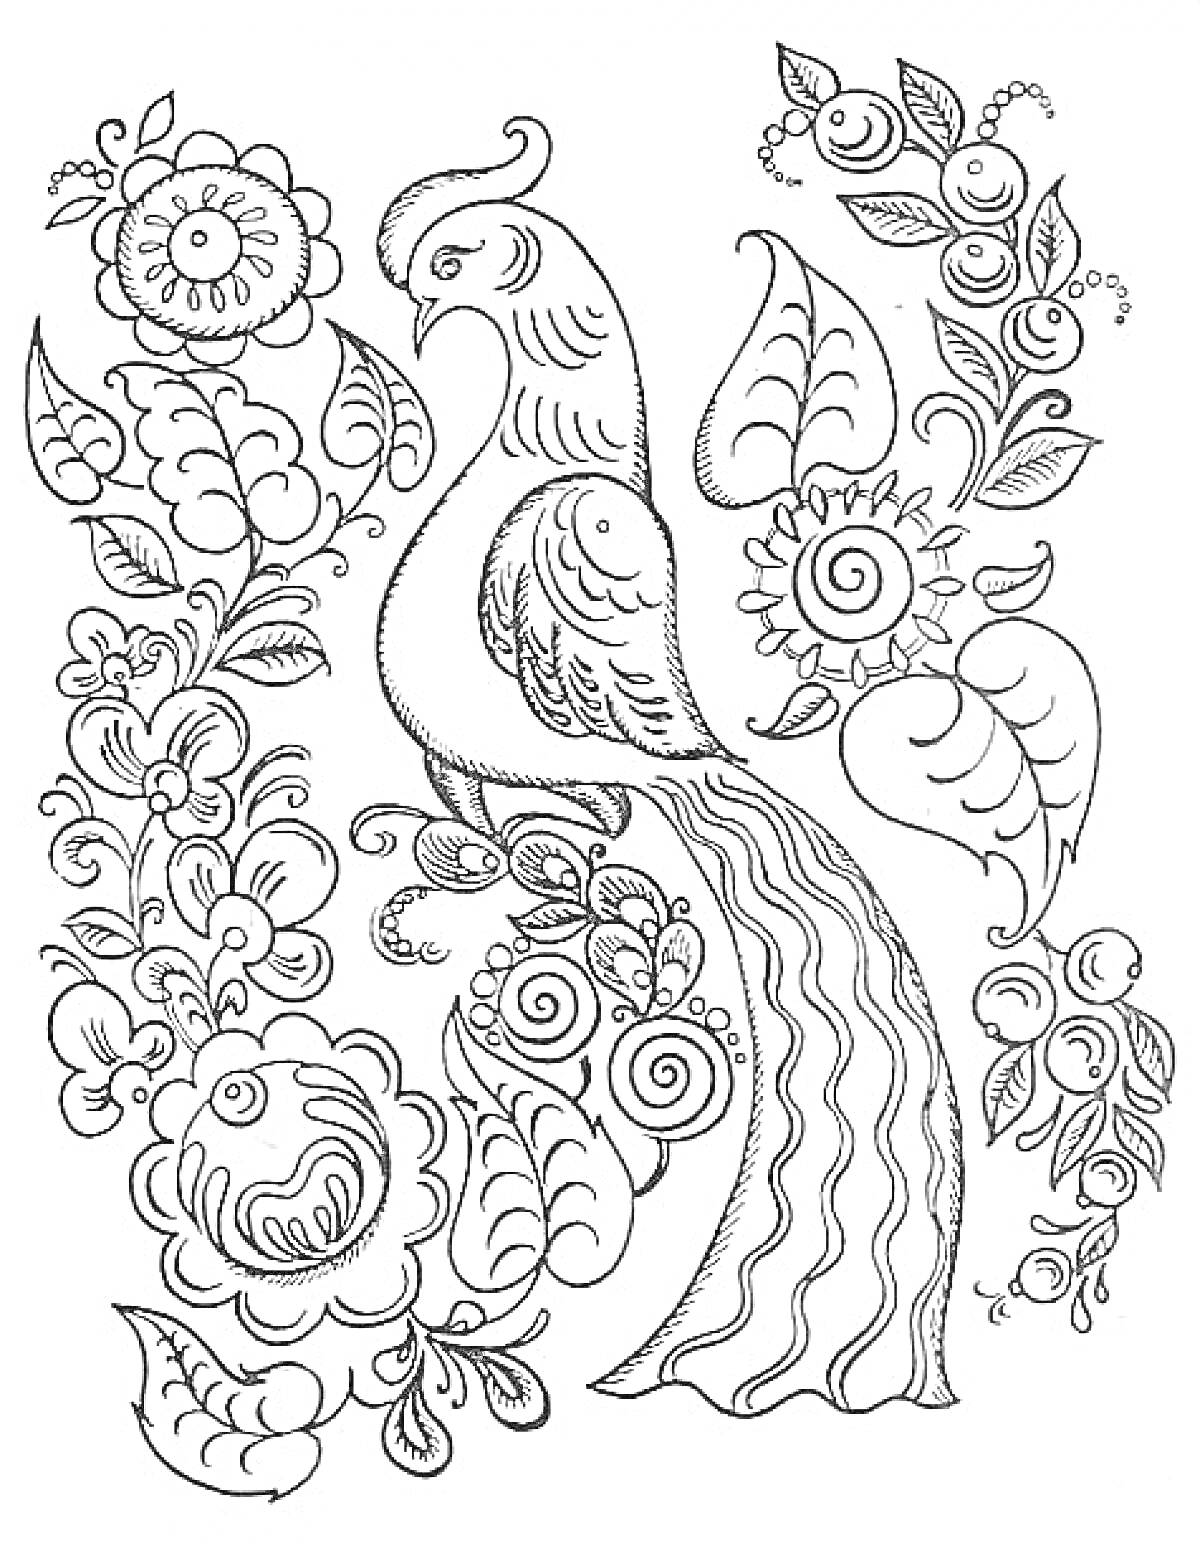 Раскраска Хохломская птица с цветочным орнаментом: птица с длинным хвостом, цветы, листья, завитки